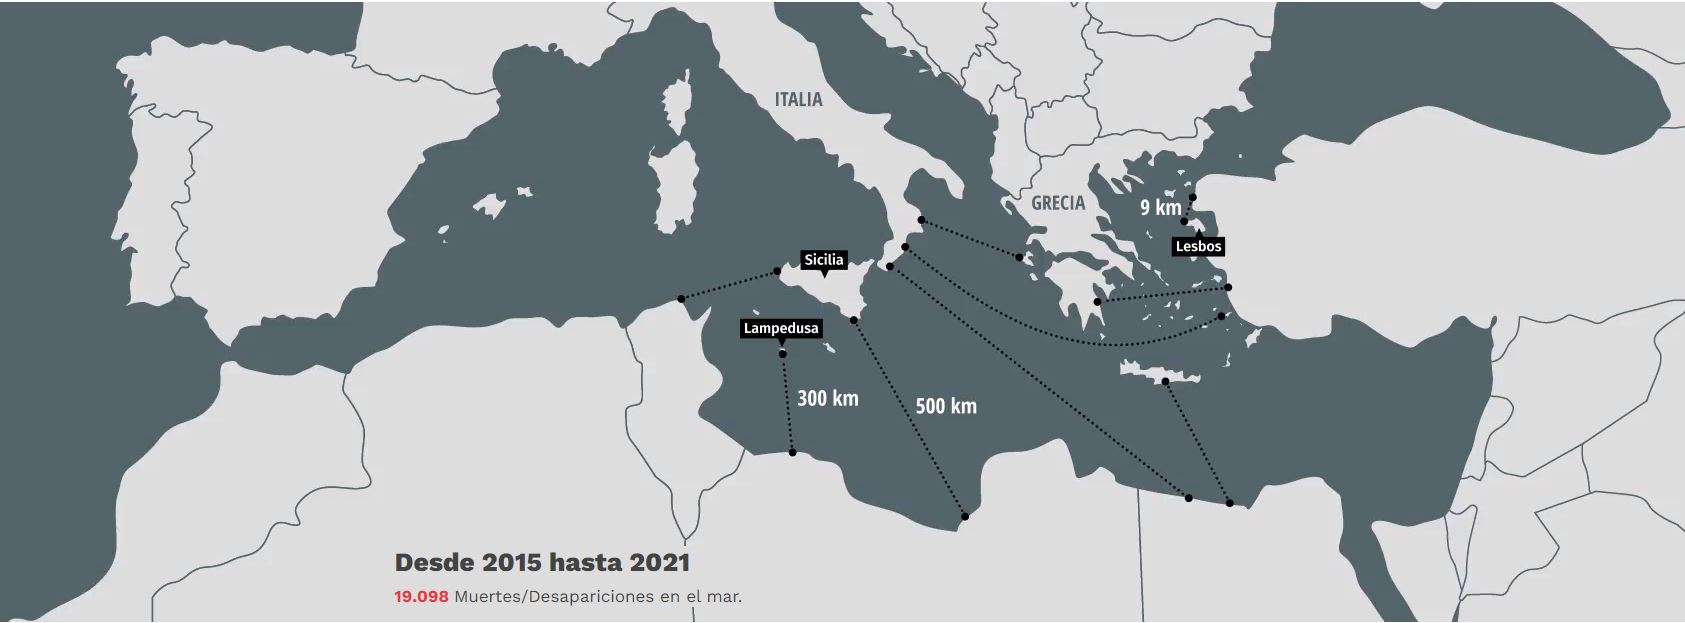 Mapa interactivo de la ONG Open Arms con las principales rutas de inmigración por el Mediterráneo